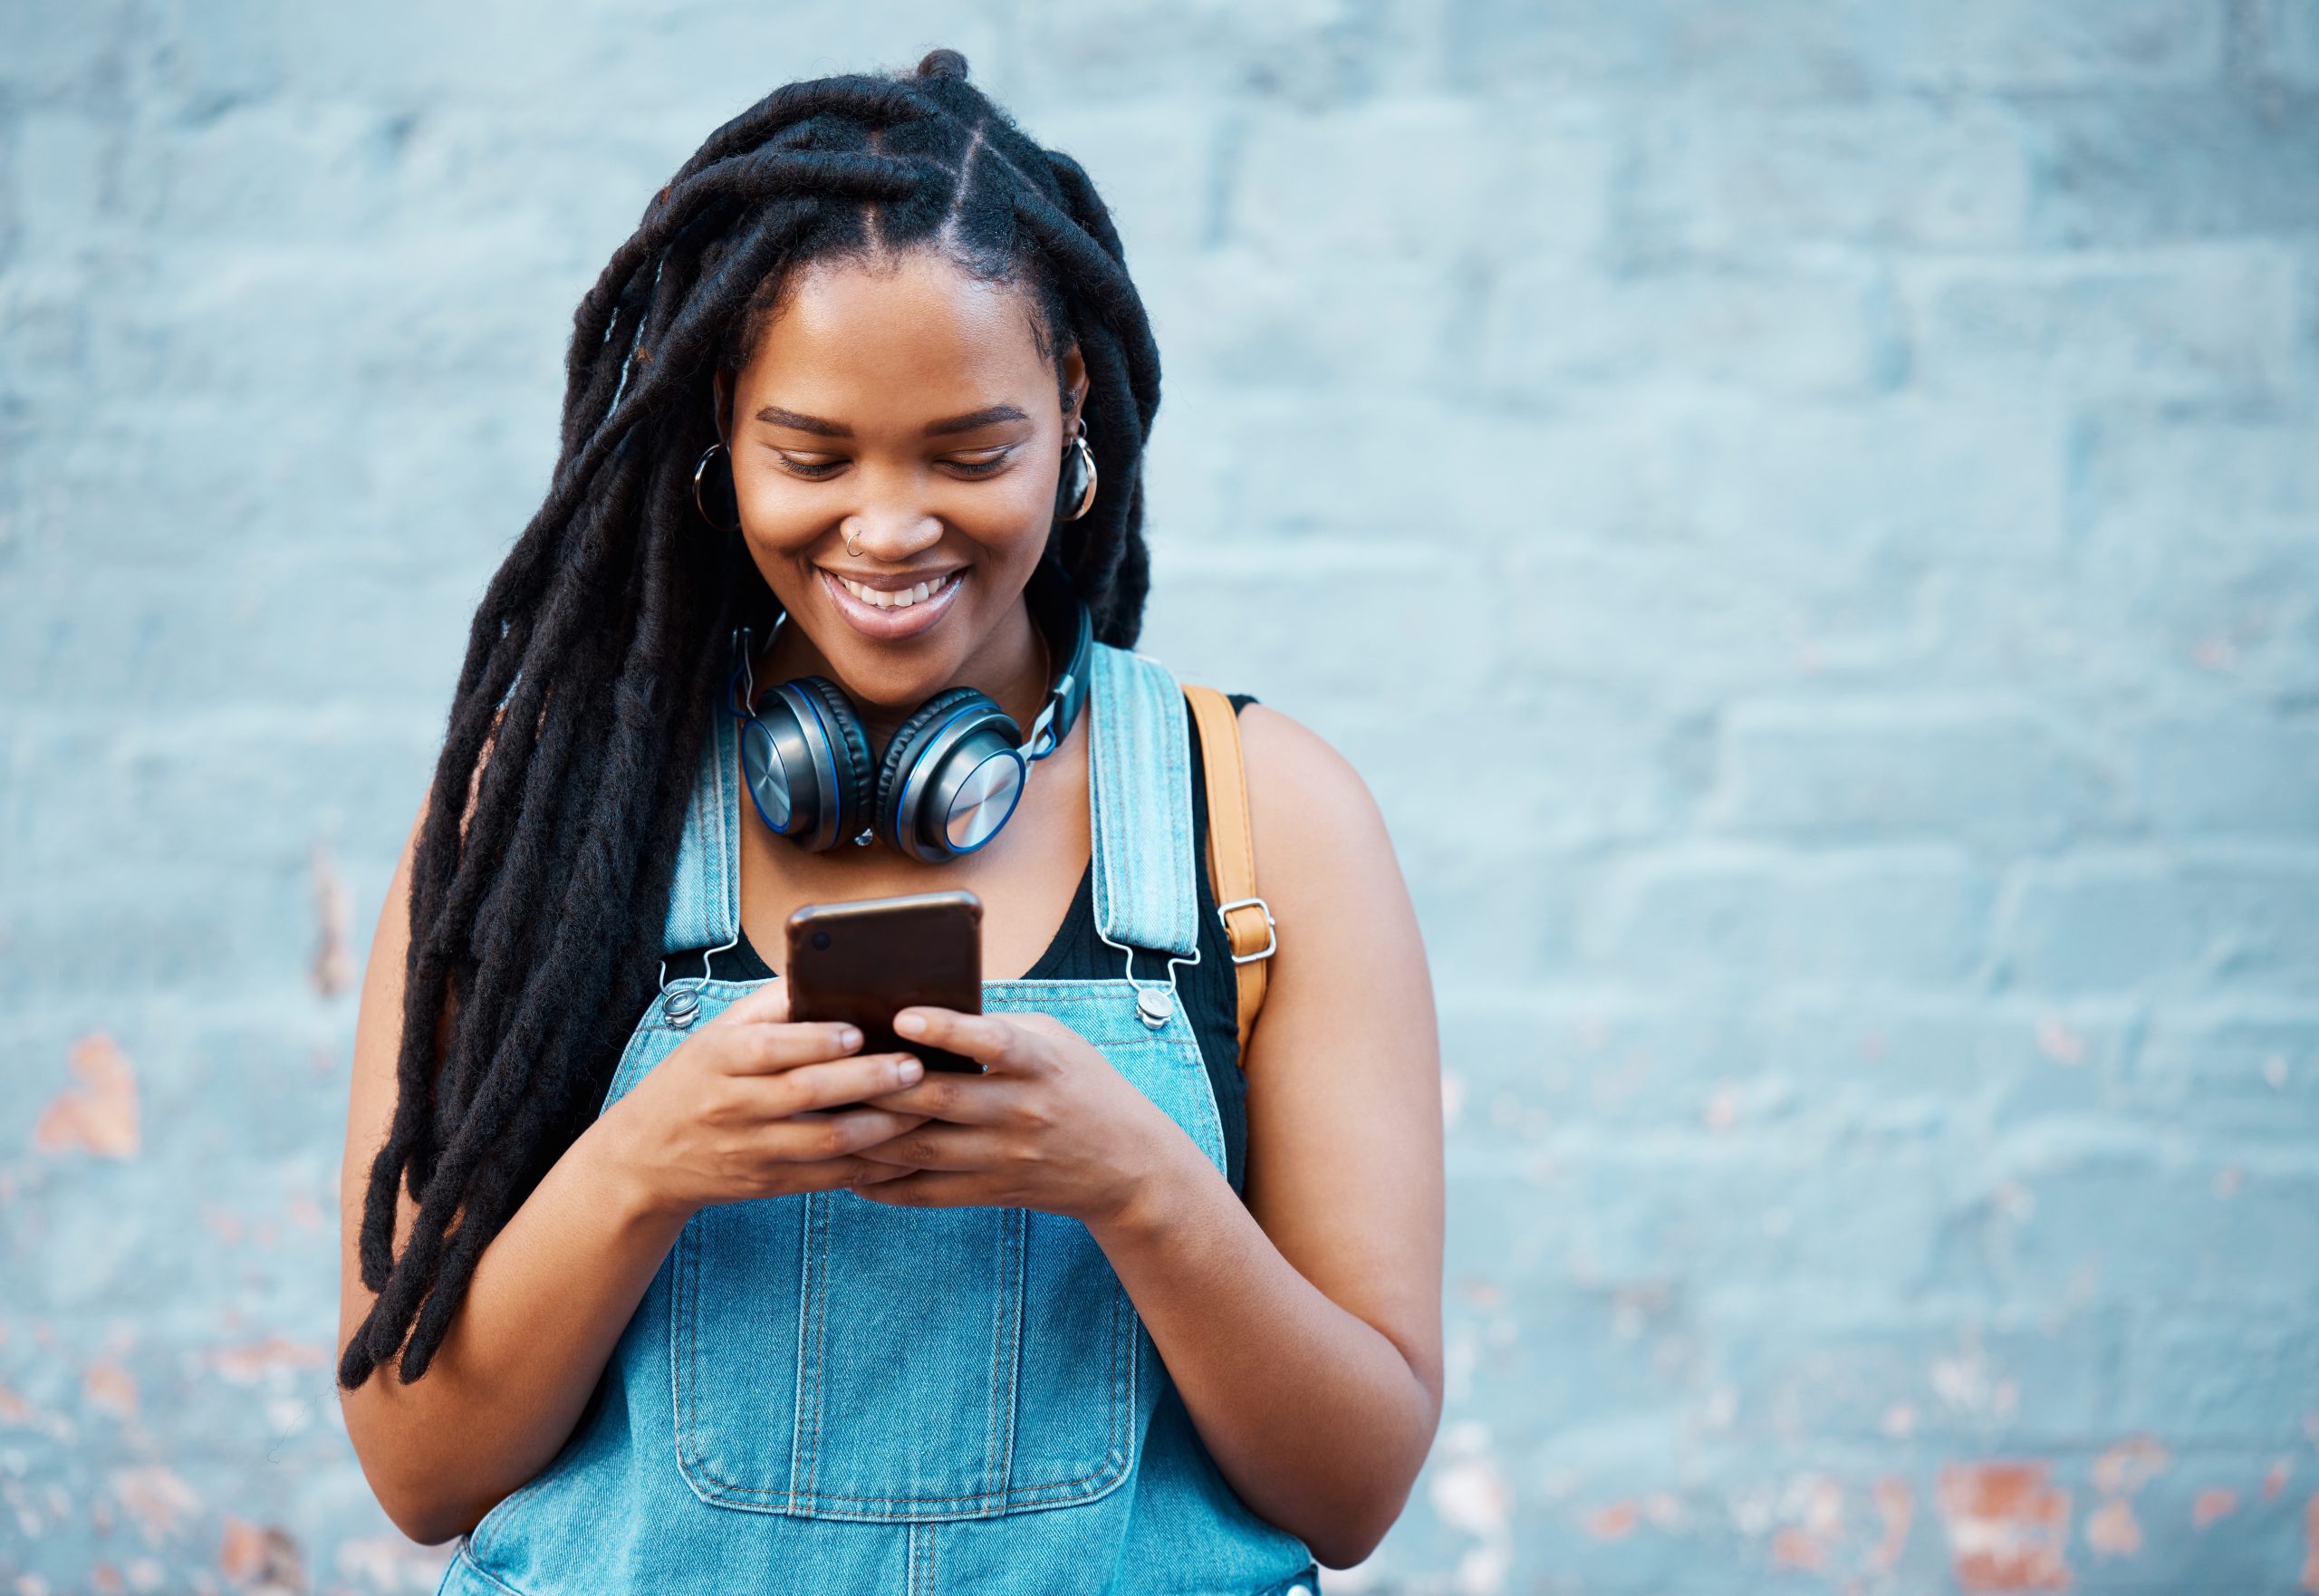 Fată afro-americană, îmbrăcată în salopetă albastră care ascultă Taylor Swift la căști și se uită pe TikTok pe telefon și zâmbește.